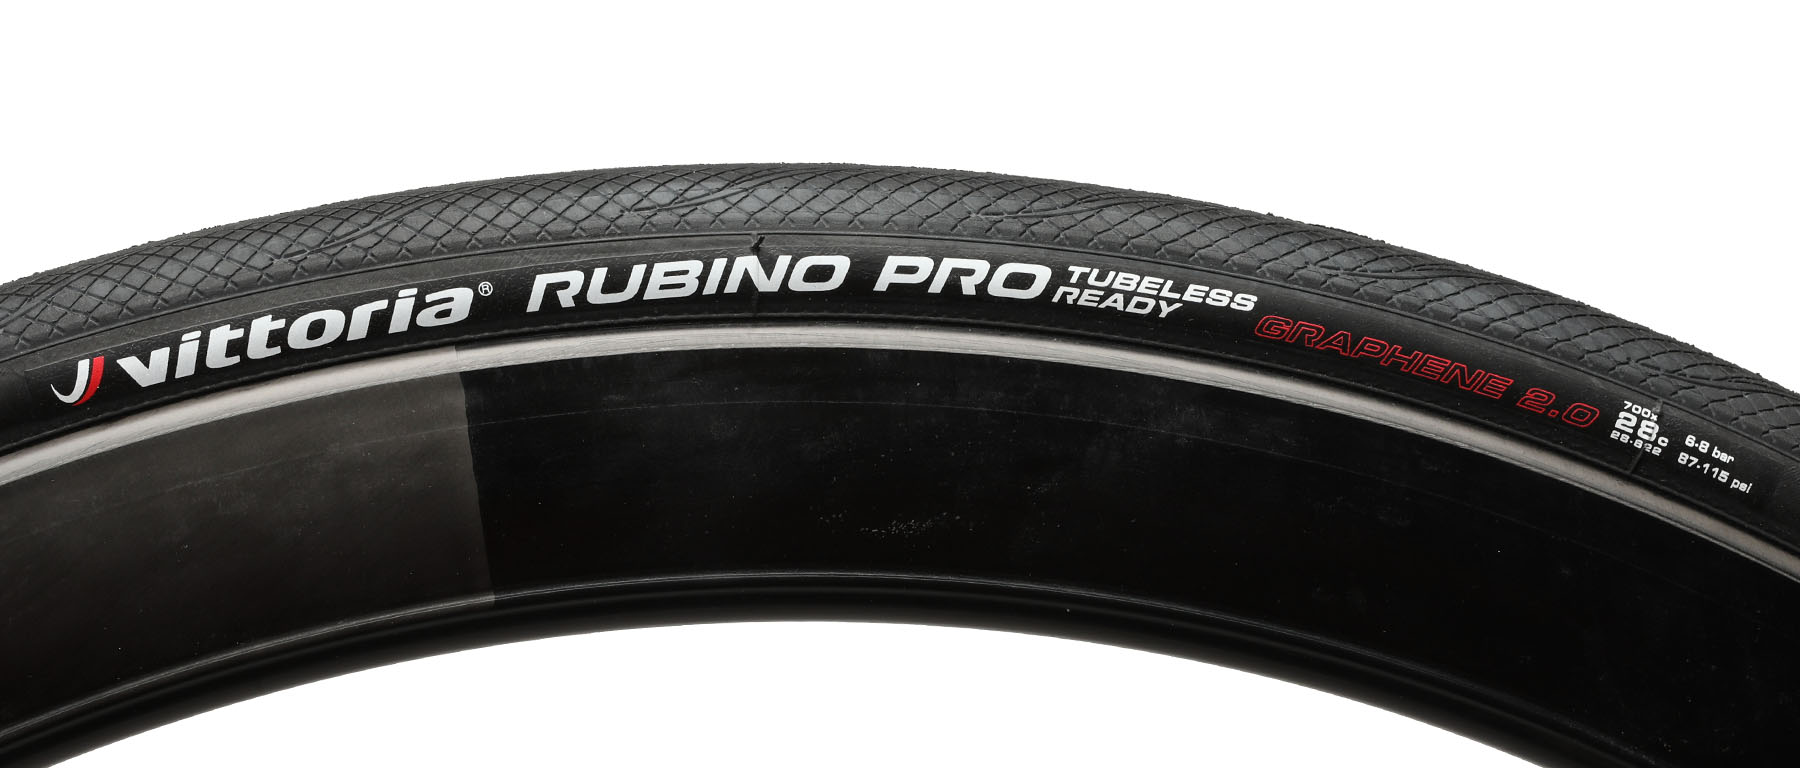 Vittoria Rubino Pro G2.0 Tubeless Road Tire 2-Pack